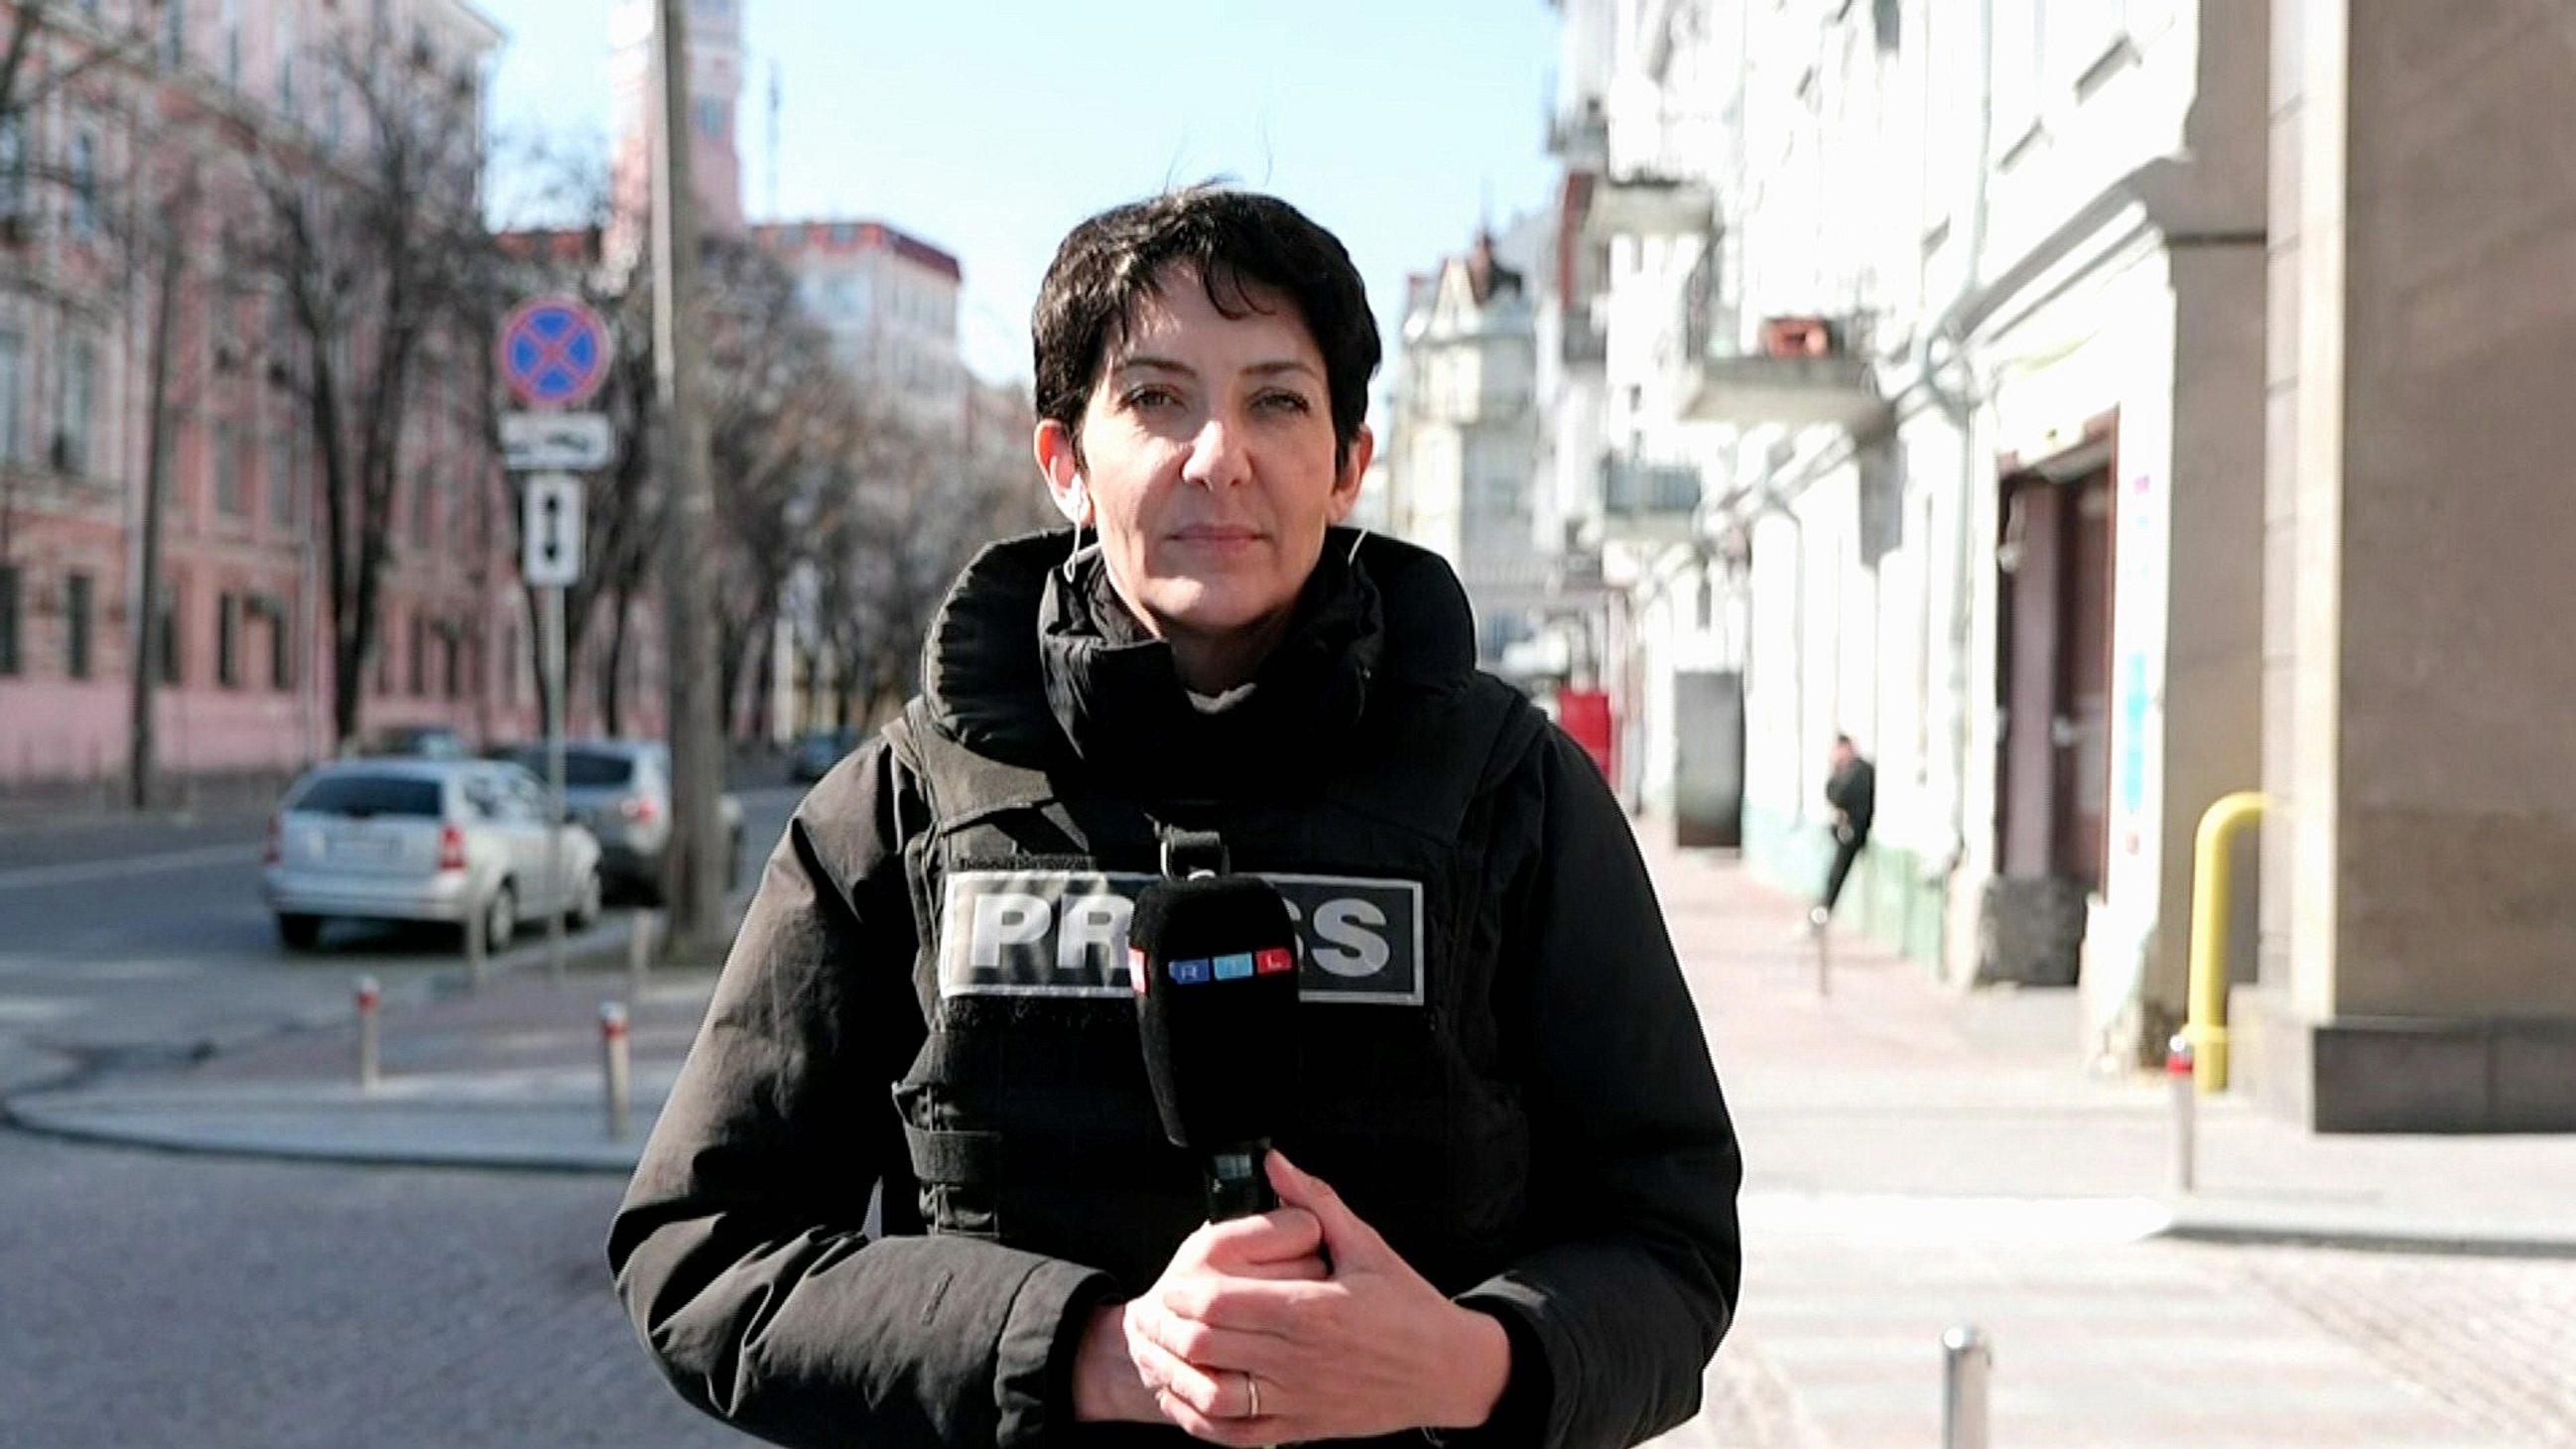 20.03.2022: RTL-Reporterin Kavita Sharma in Kiew, Ukraine  +++ Die Verwendung des sendungsbezogenen Materials ist nur mit dem Hinweis und Verlinkung auf RTL+ gestattet. +++